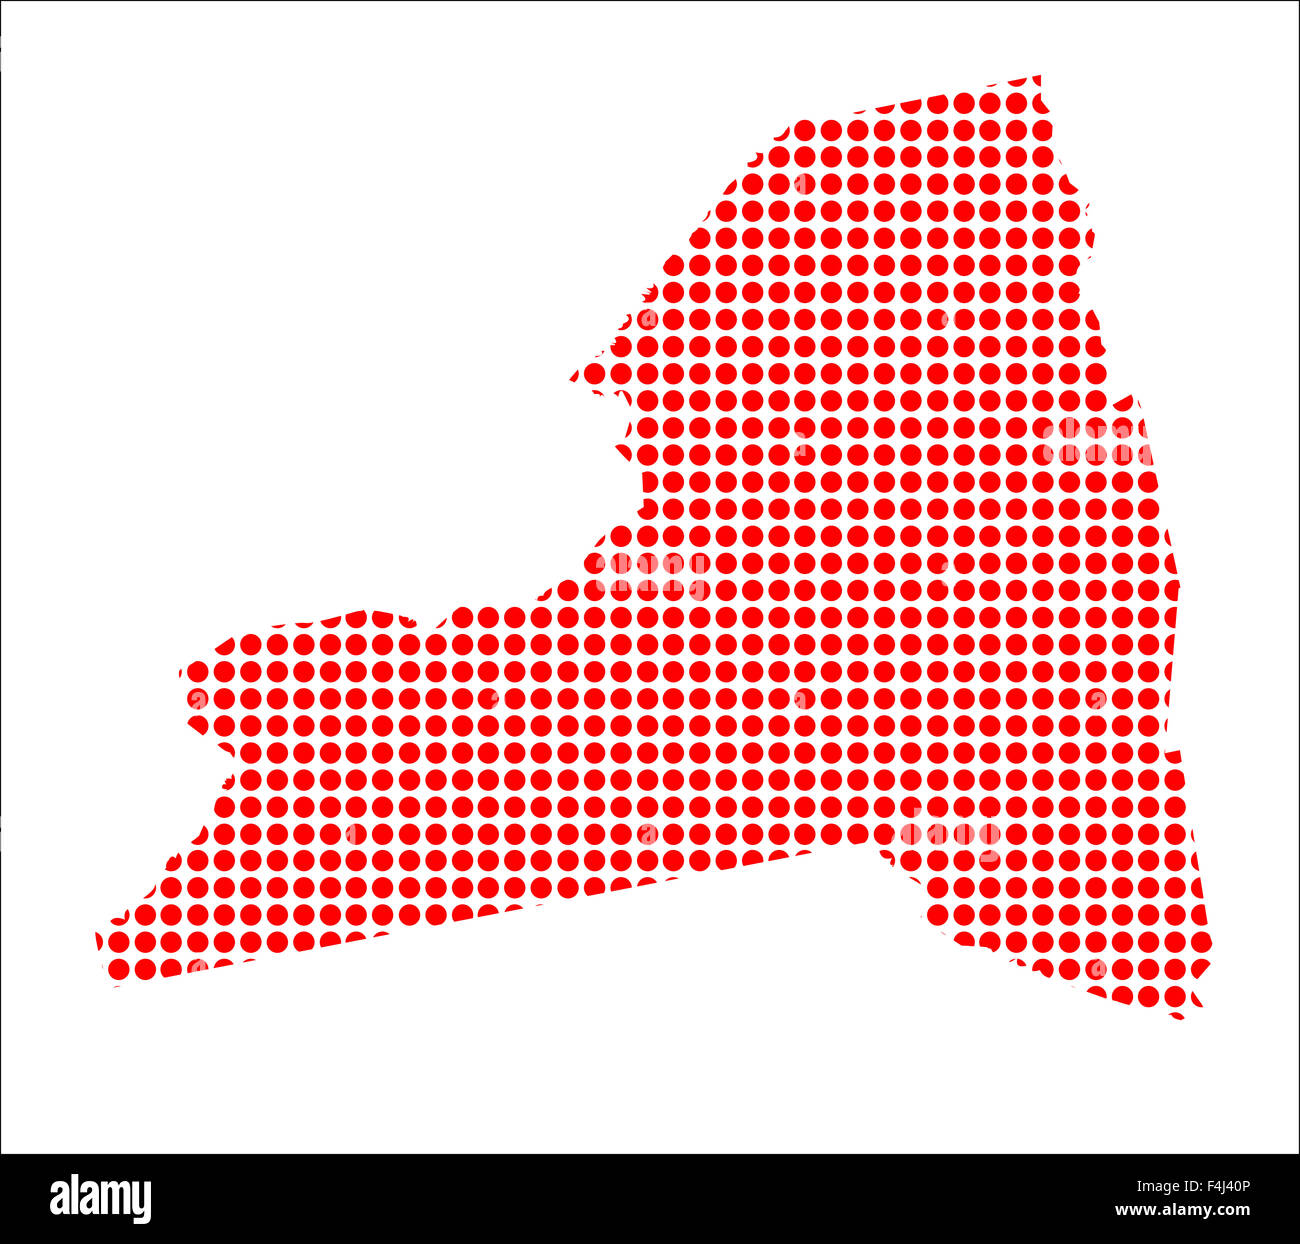 Una mappa dello stato di New York ha creato da una serie di punti rossi su sfondo bianco Foto Stock